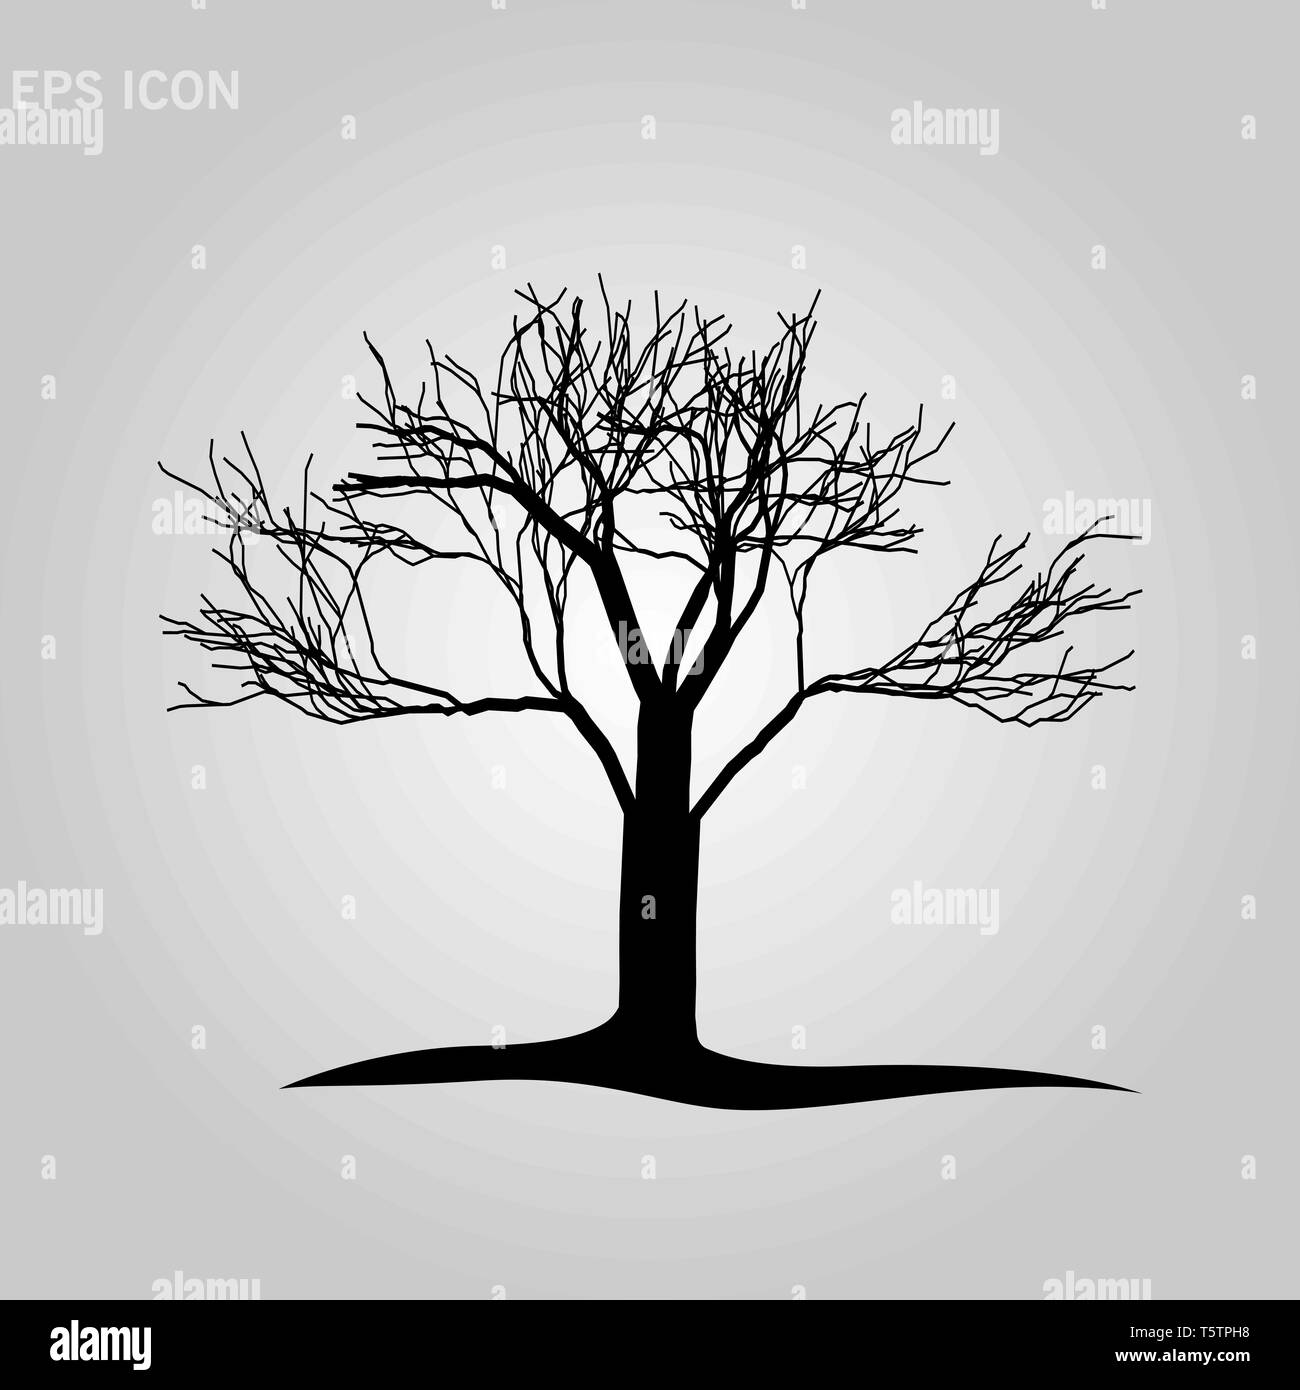 Baum Silhouette isoliert auf weißem Hintergrund. Vecrtor Abbildung. EPS 10. Stock Vektor